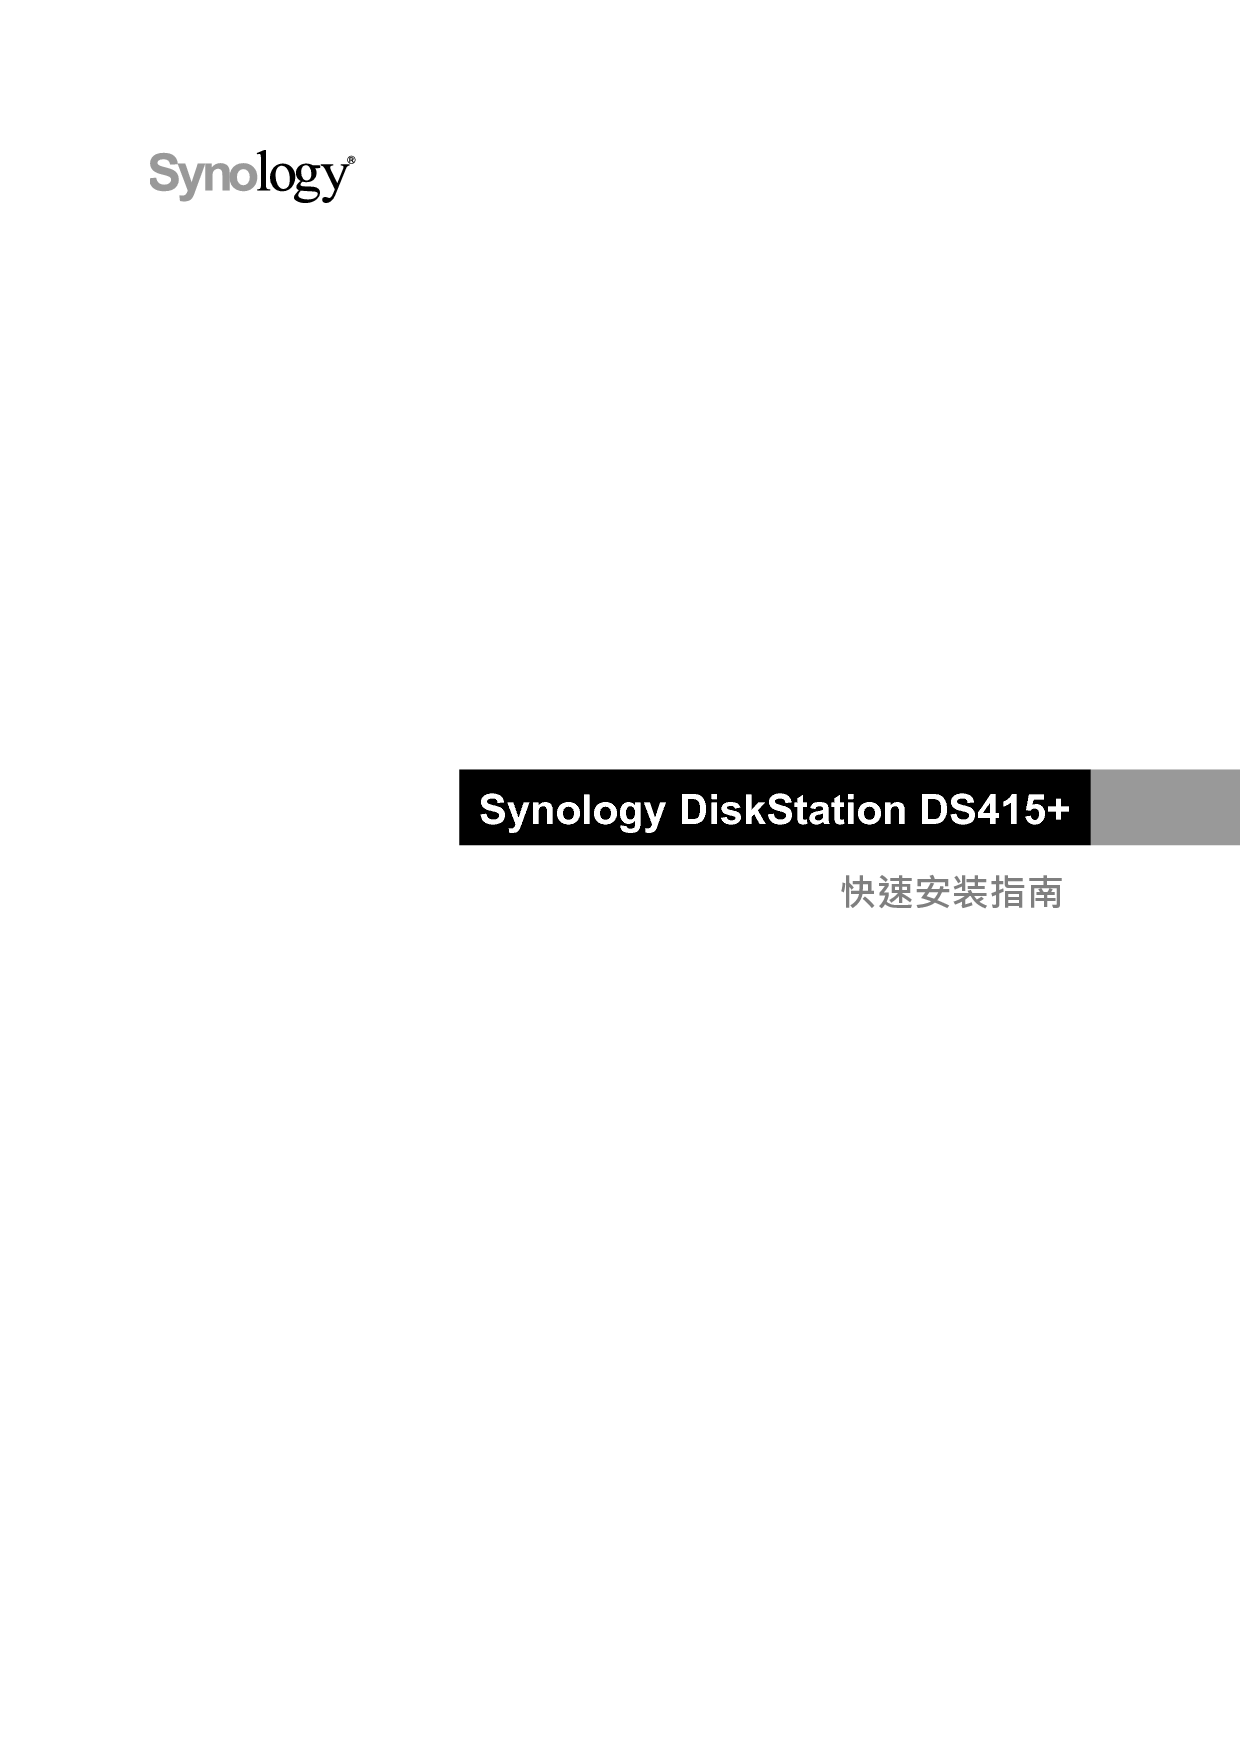 群晖 Synology DS415+ 快速安装指南 封面